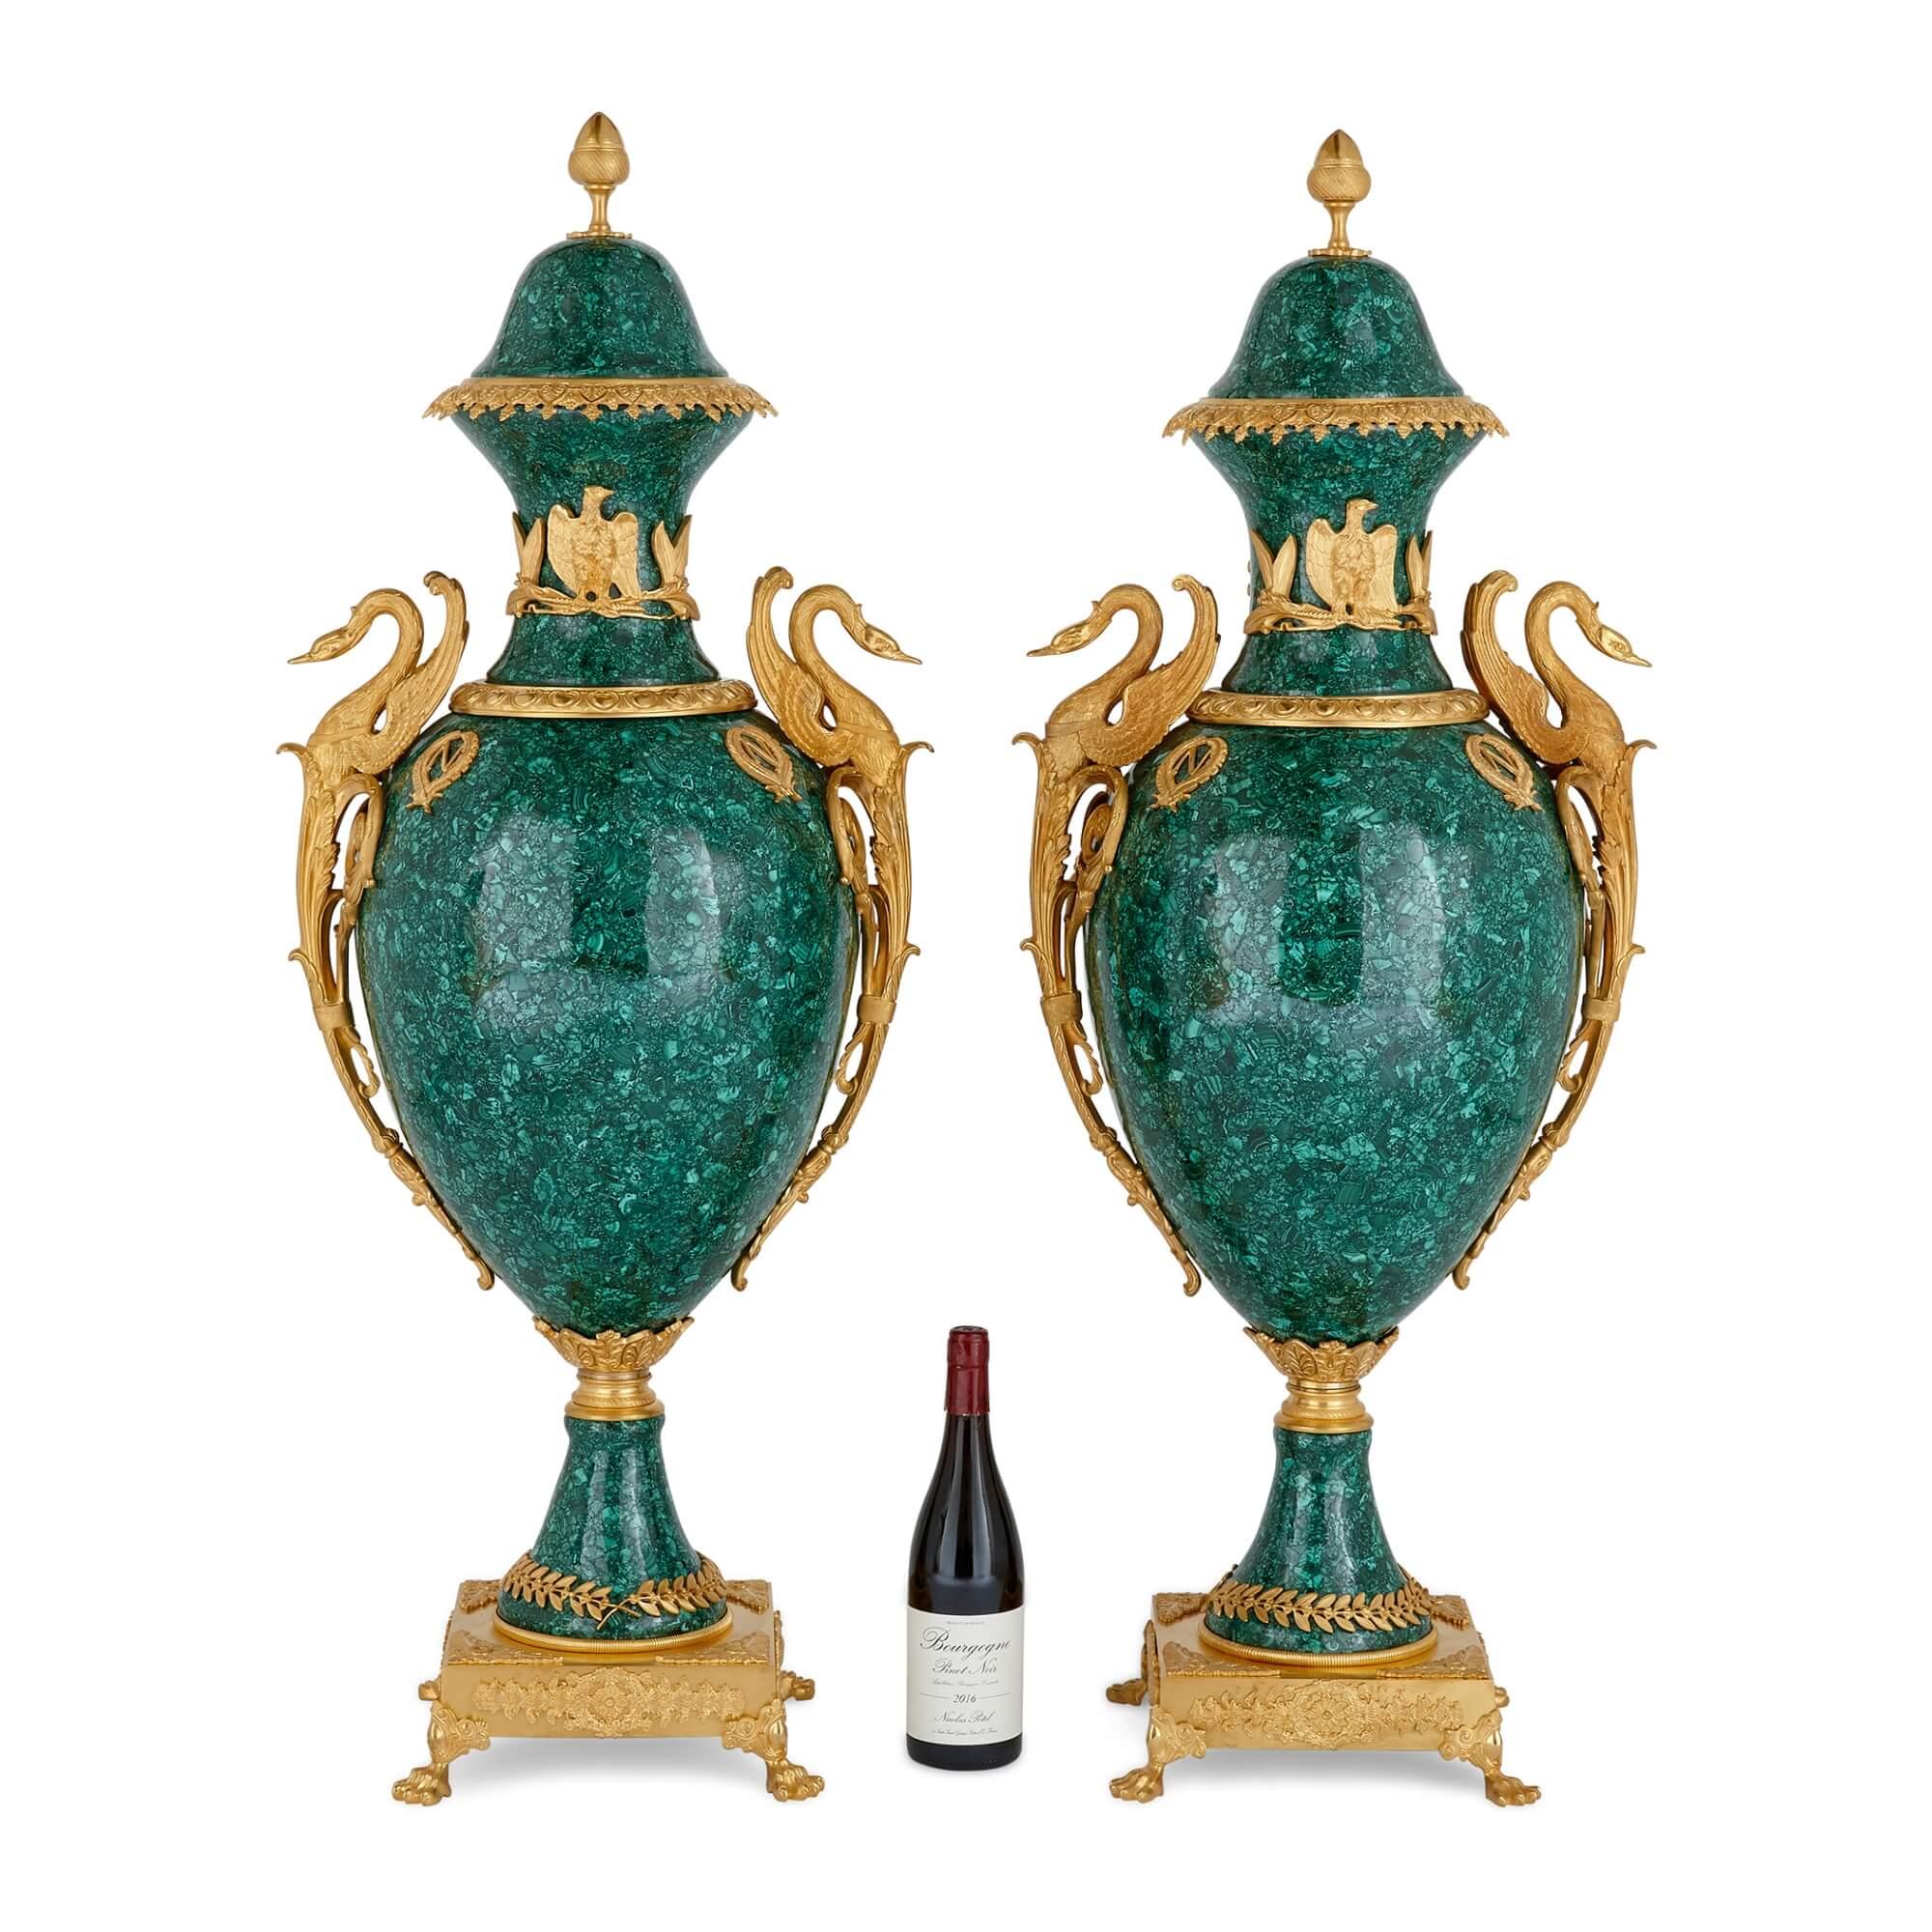 Diese prächtigen, in Malachit und Ormolu gefassten Vasen sind im französischen Empire-Stil ausgeführt und mit einem vergoldeten Dekor versehen, das unverkennbar von Selbstbewusstsein, Stolz und Sieg zeugt. Auf beiden Seiten zeigen sie wunderschön